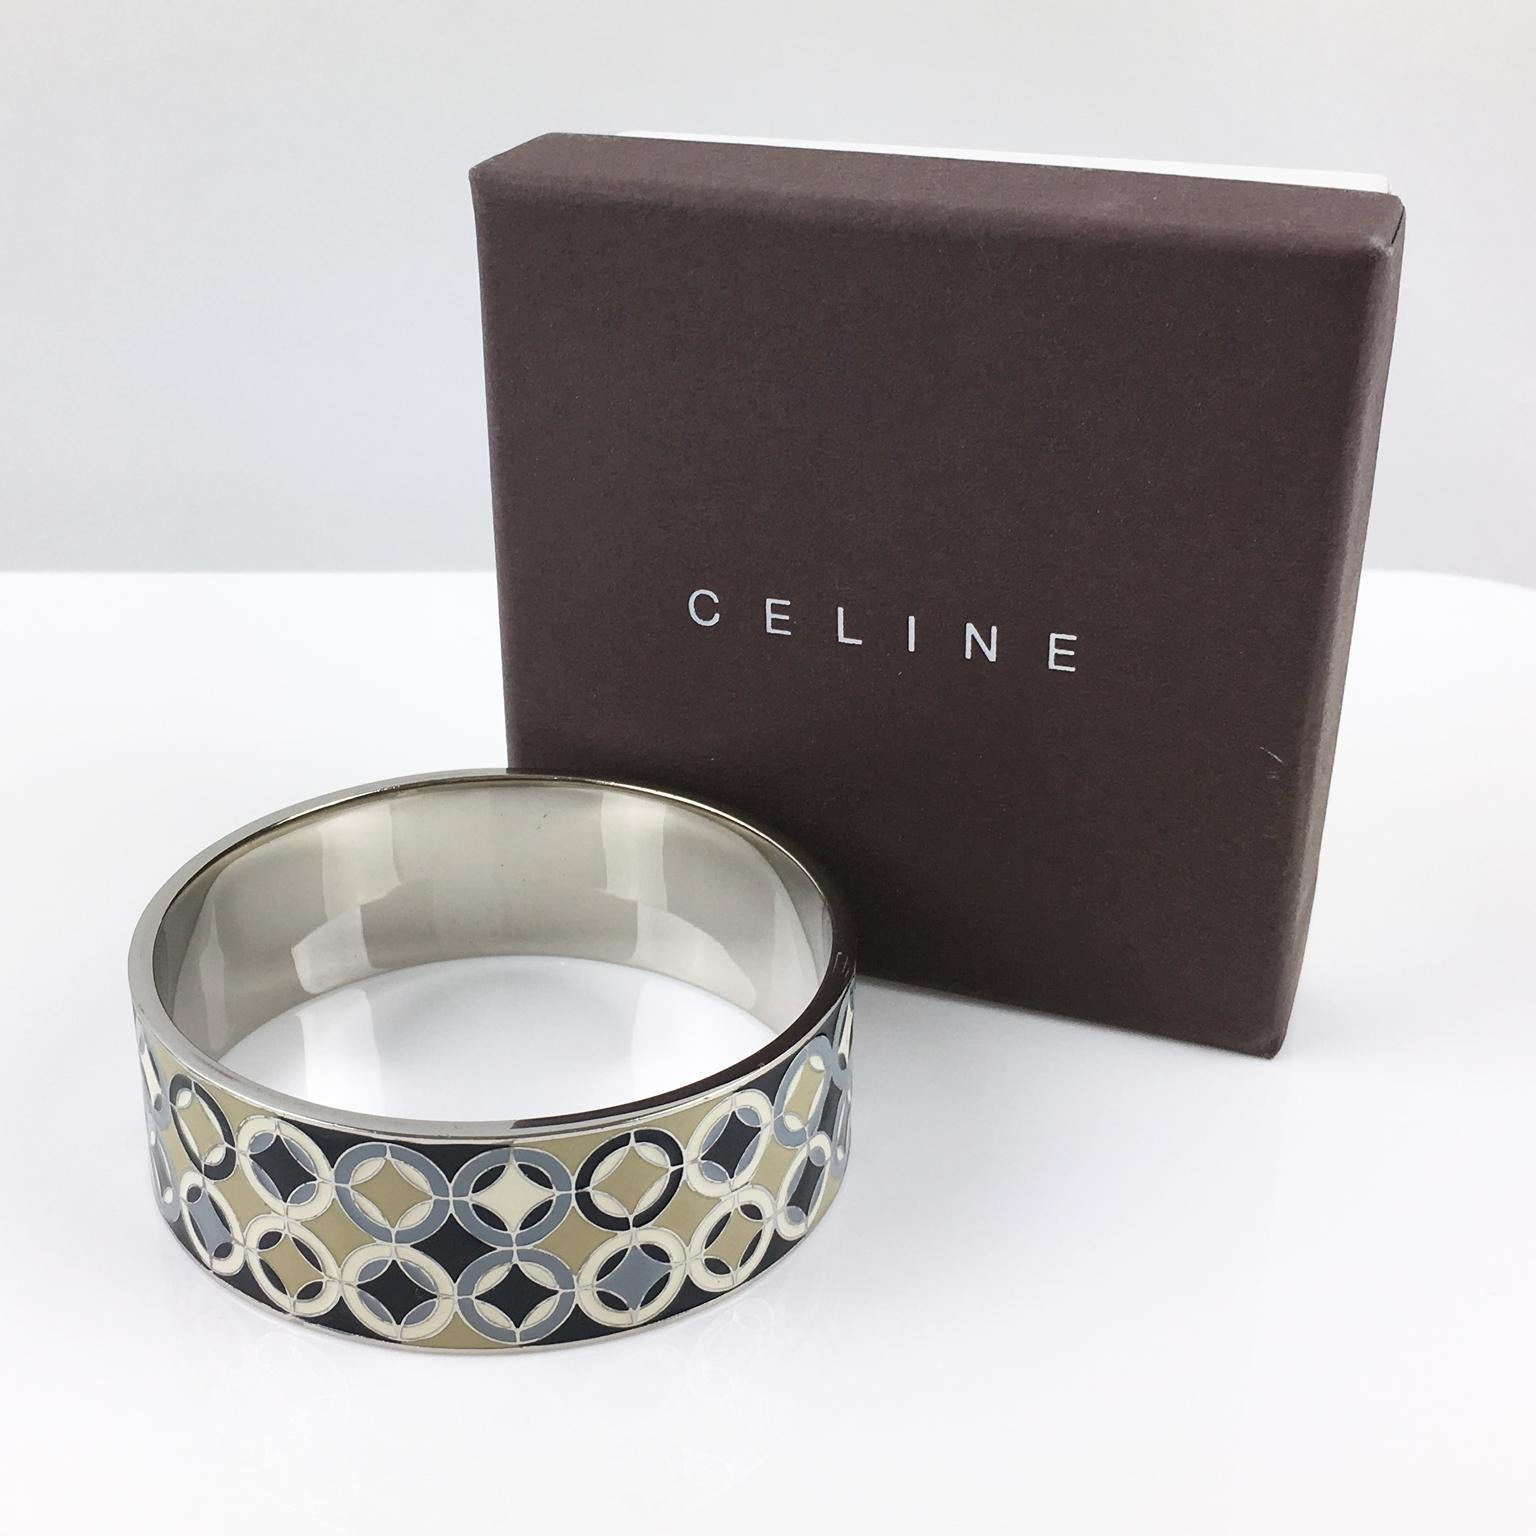 Ce ravissant bracelet en métal argenté de Celine Paris se compose d'une large bande tranchée et d'un motif géométrique moderniste émaillé dans des couleurs assorties noir, gris, beige et ivoire. La pièce est marquée 